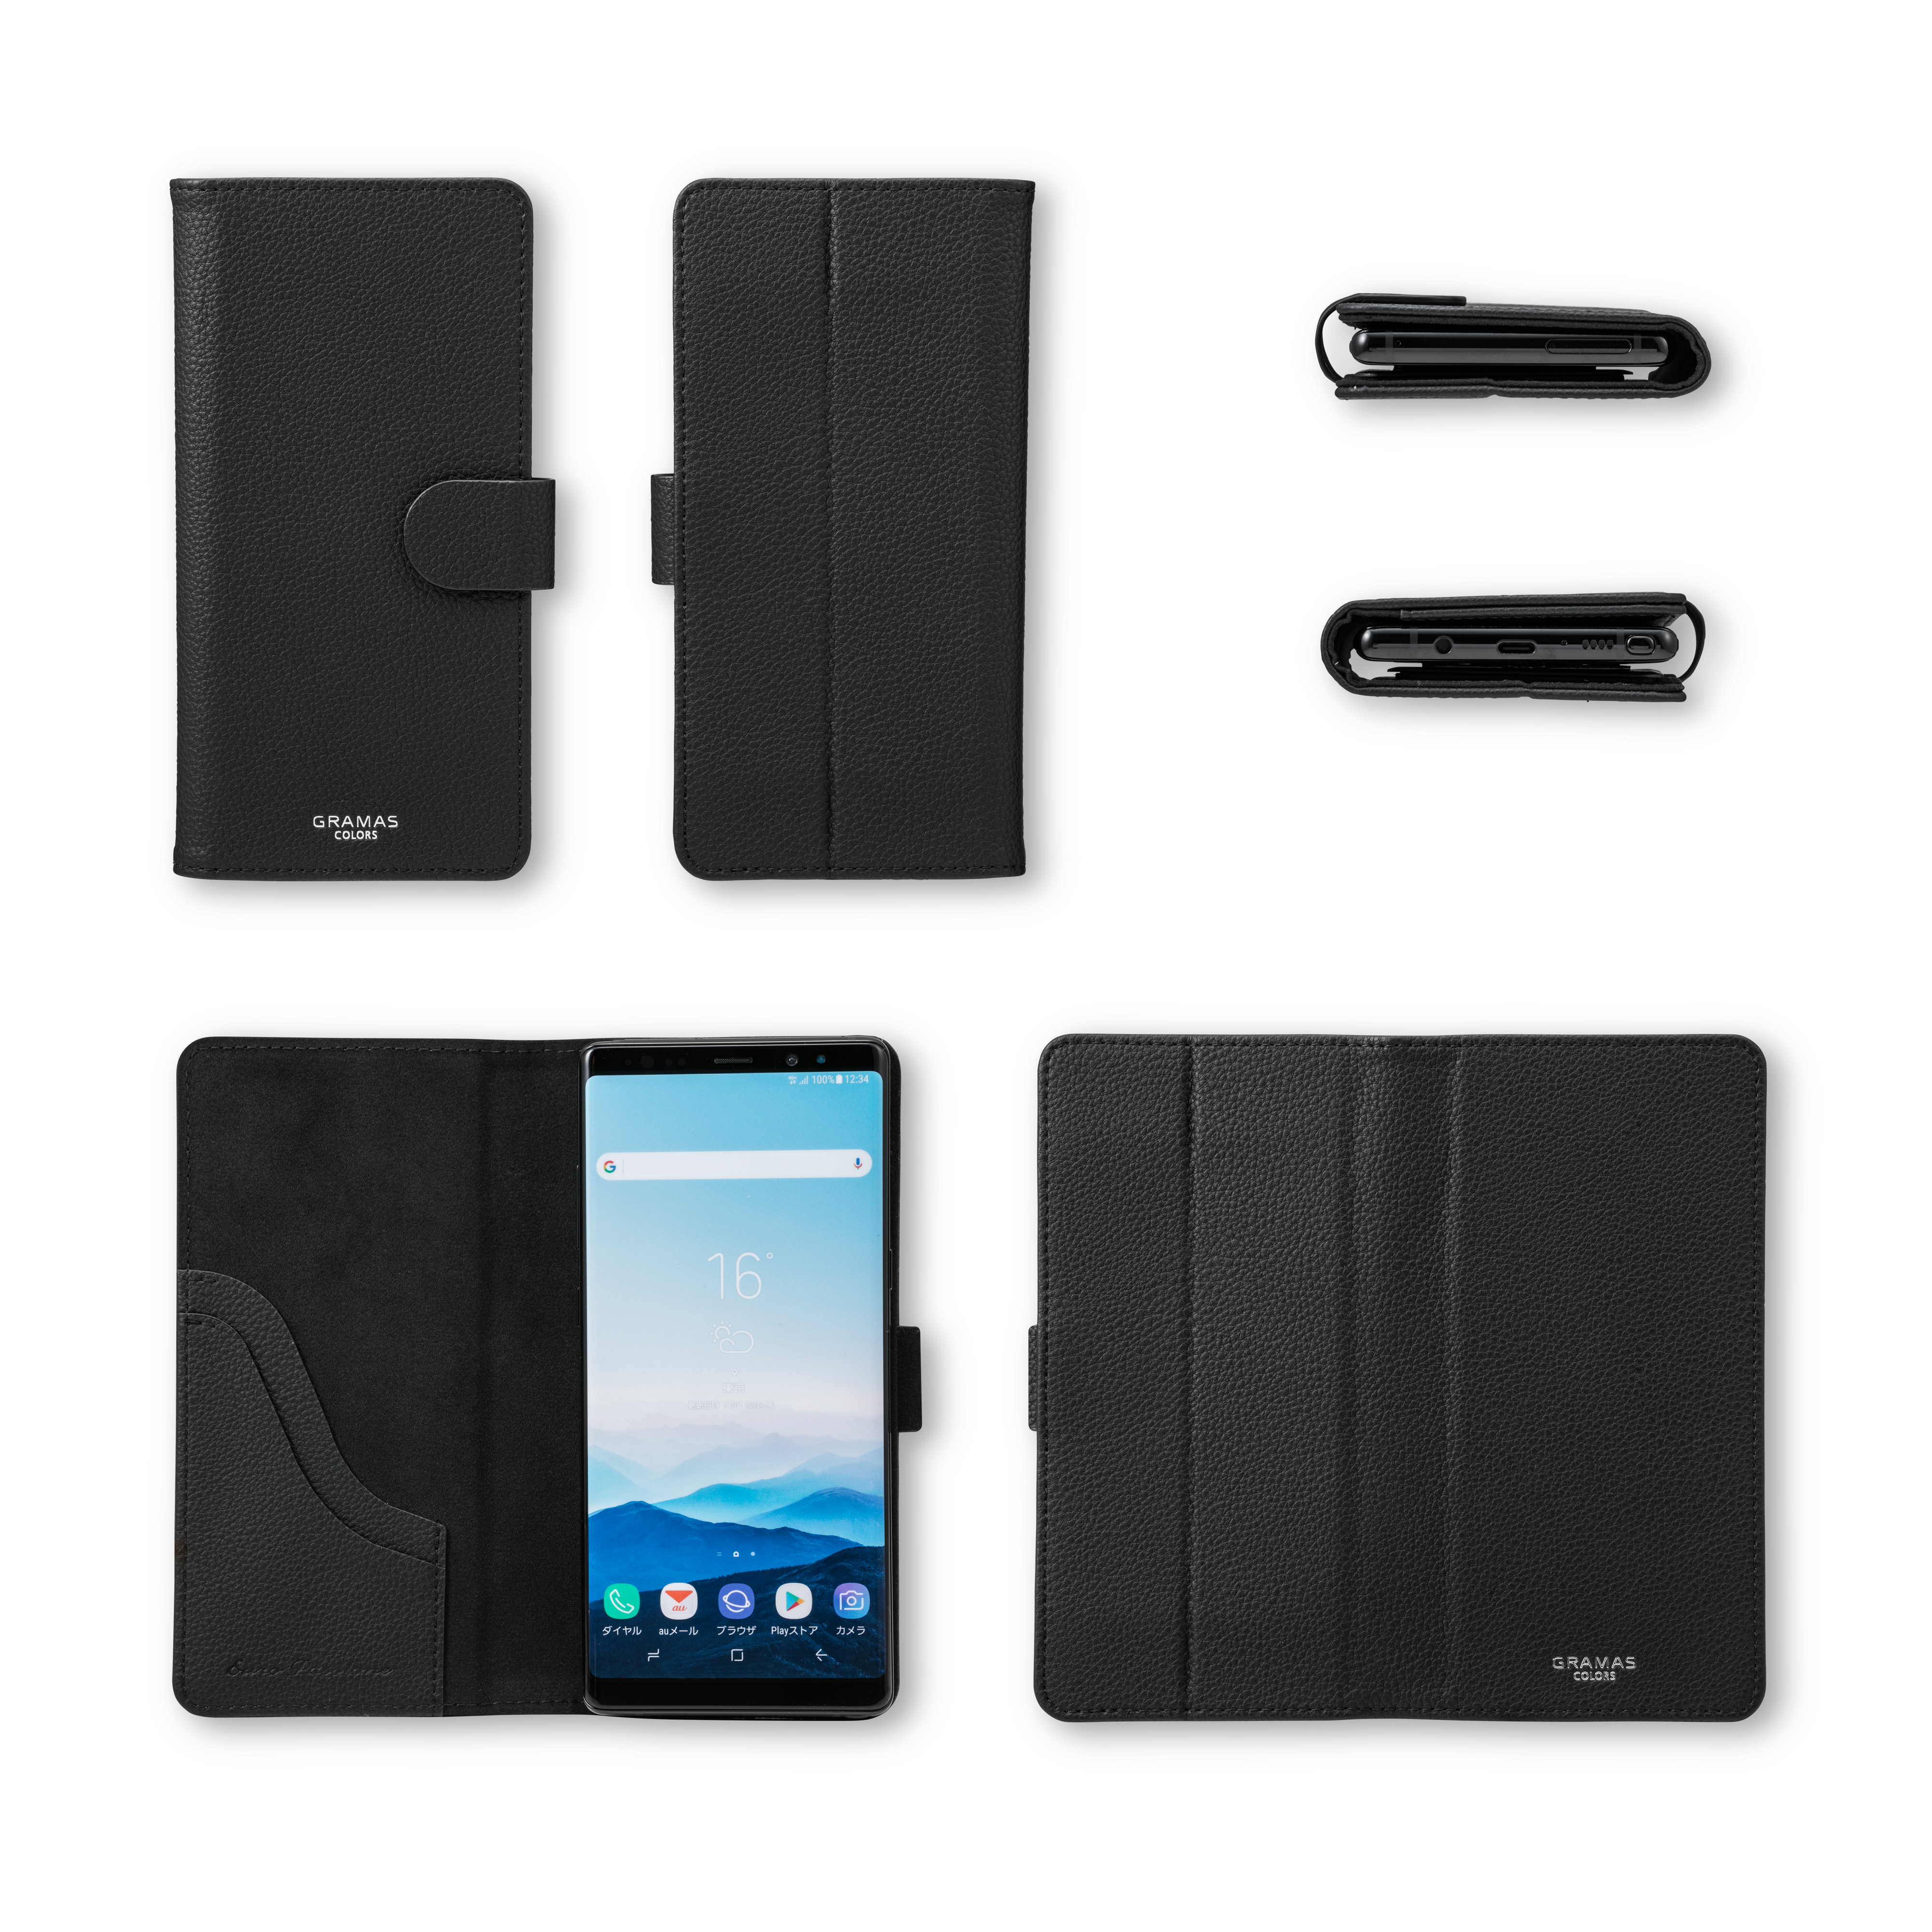 【アウトレット】【マルチ スマホケース】”EveryCa2” Multi PU Leather Case for Smartphone L (Gray)サブ画像